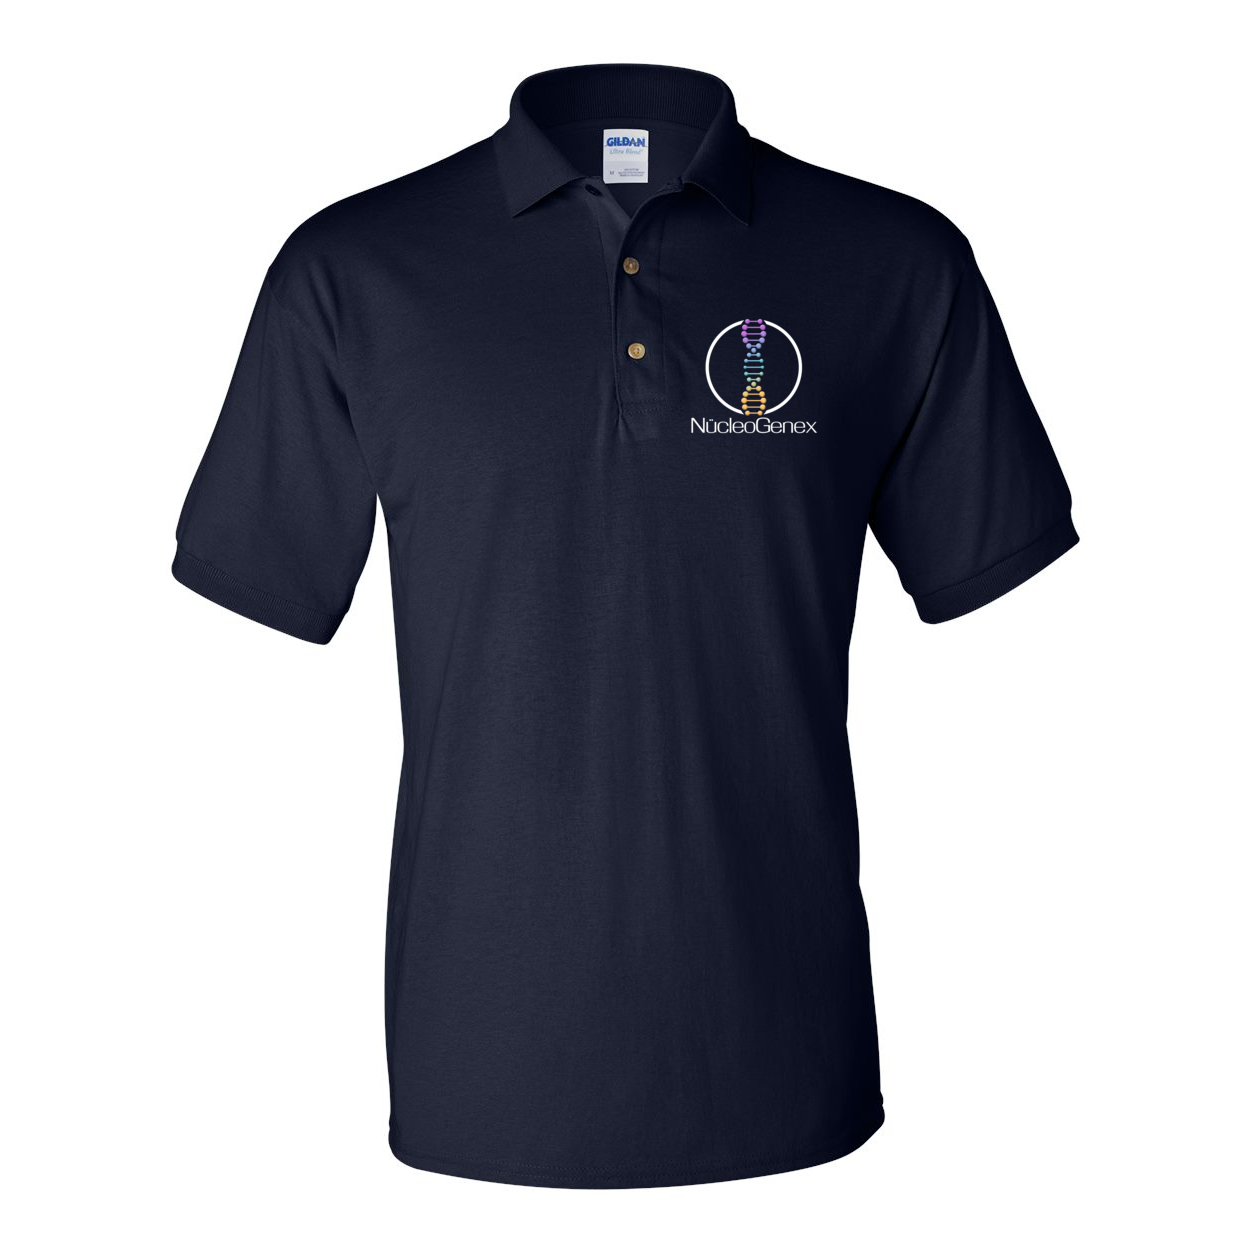 DryBlend® Jersey Sport Shirt